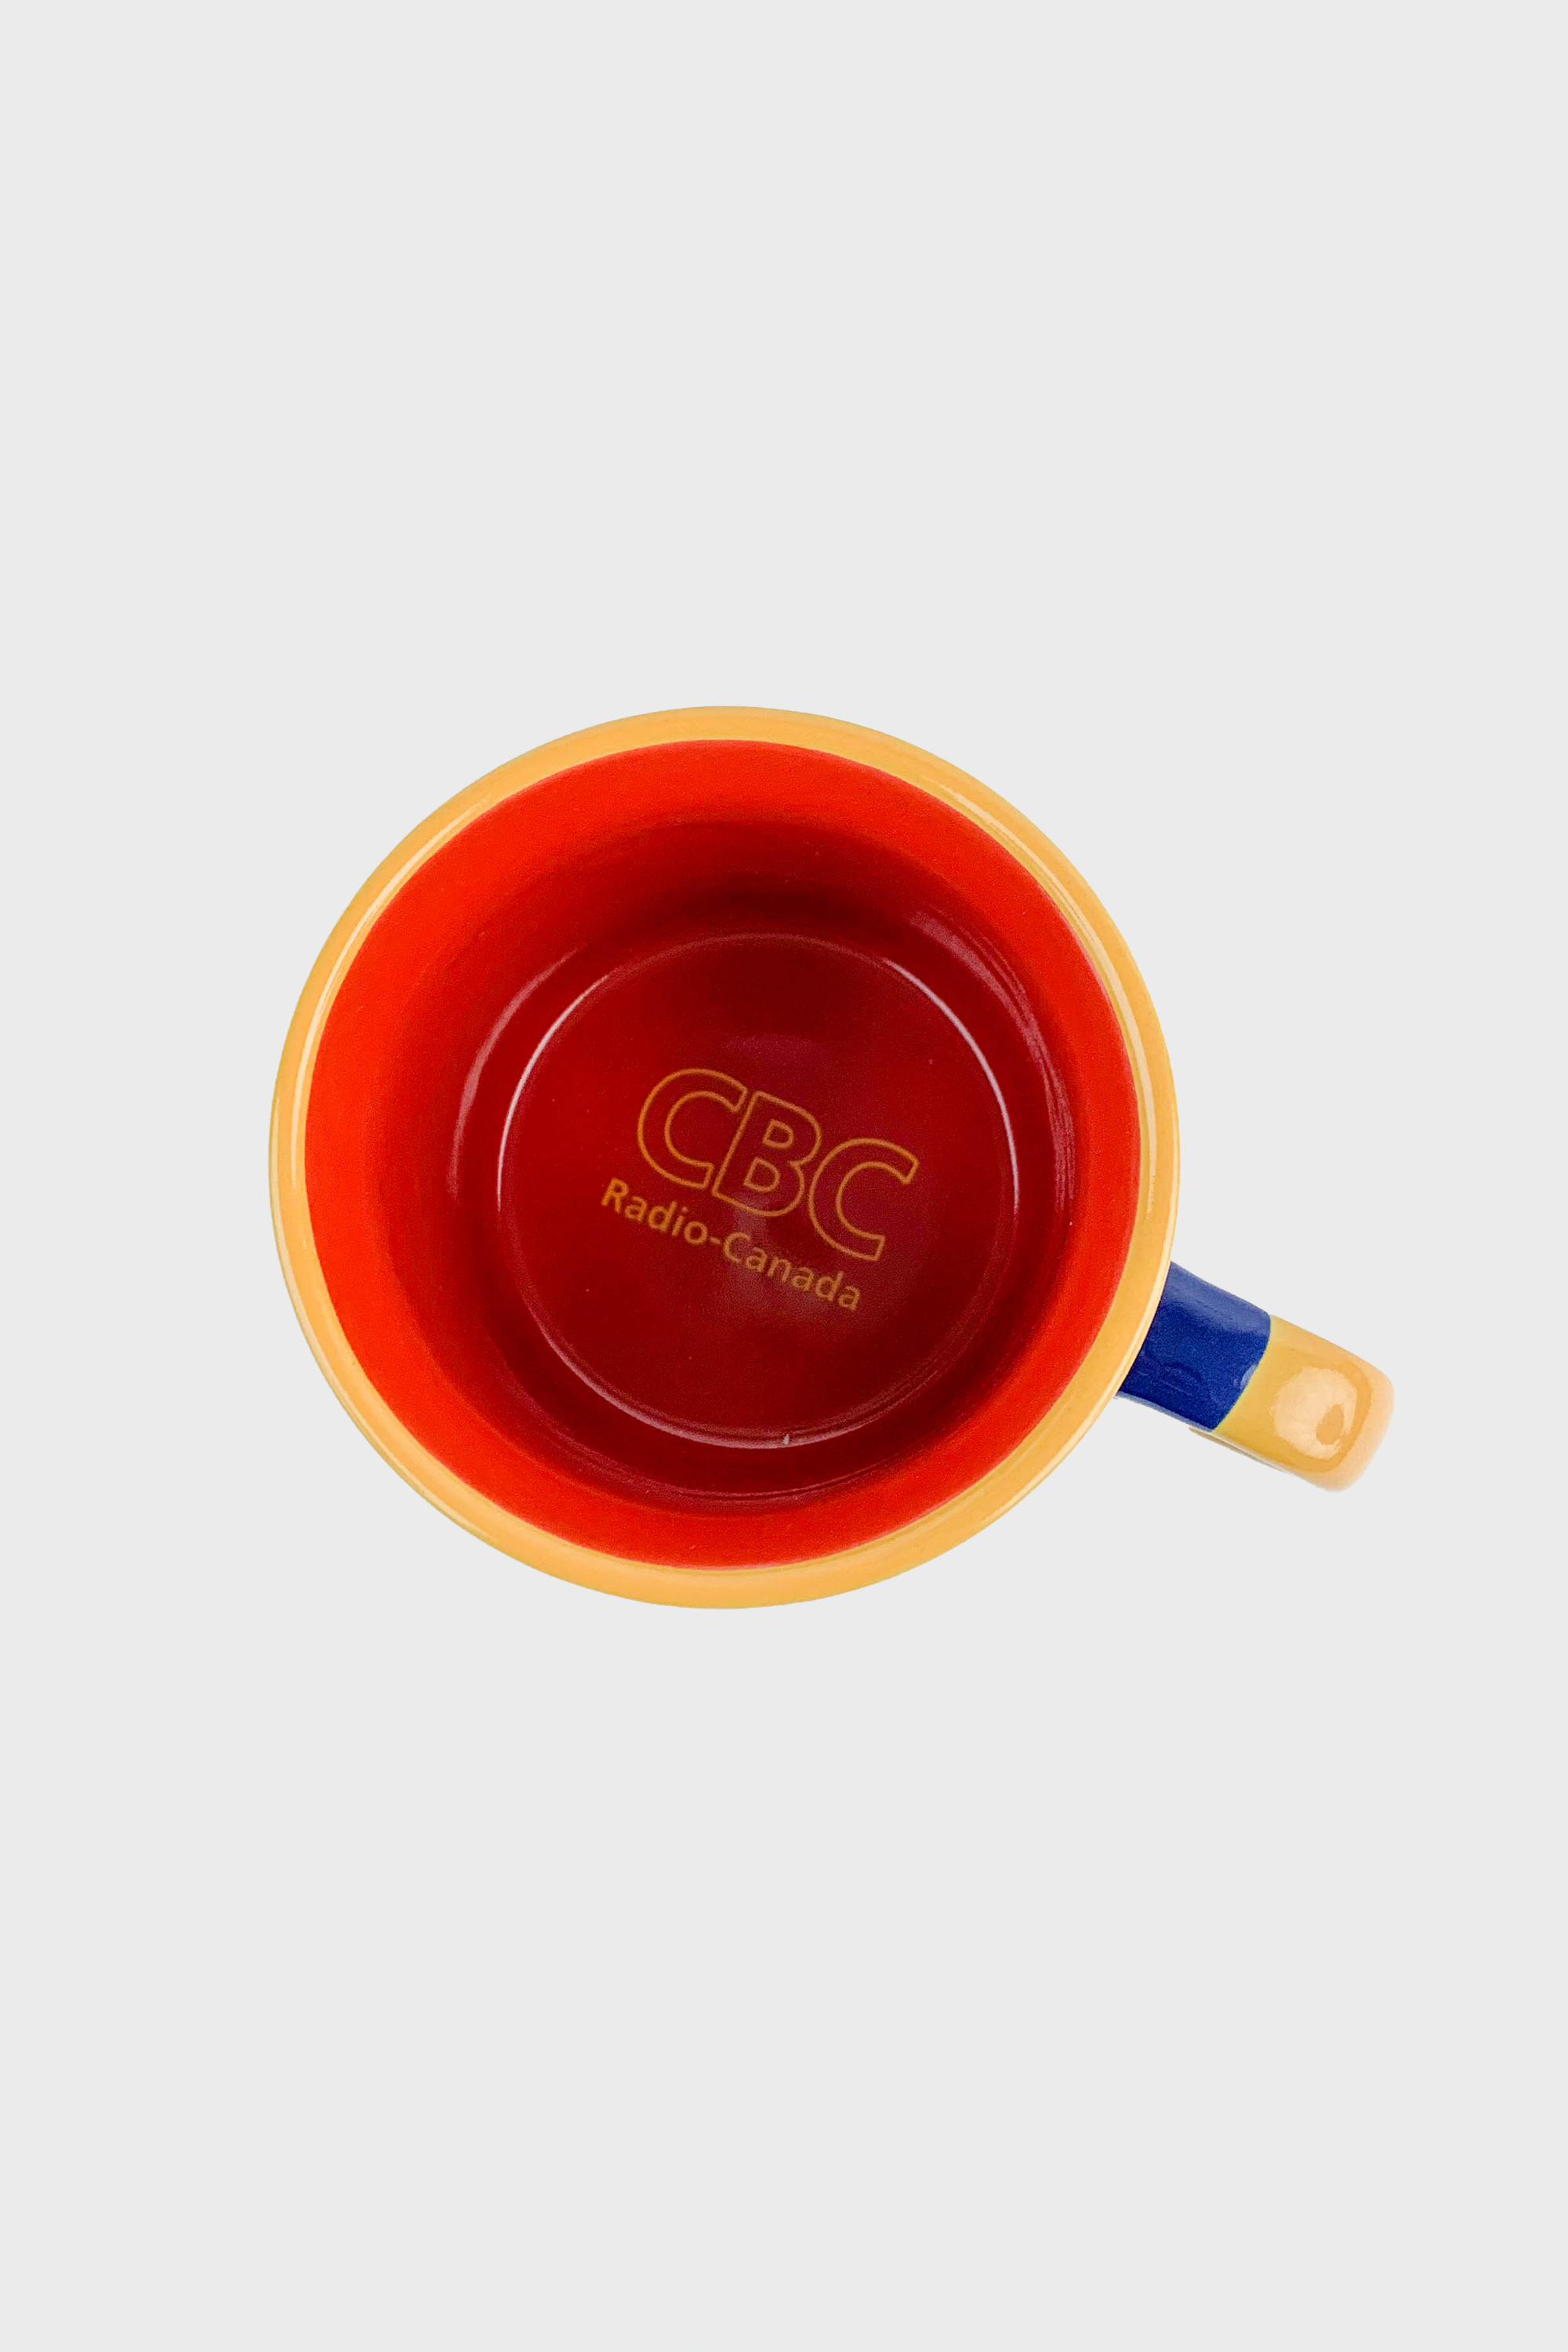 Main & Local CBC Logo Mug